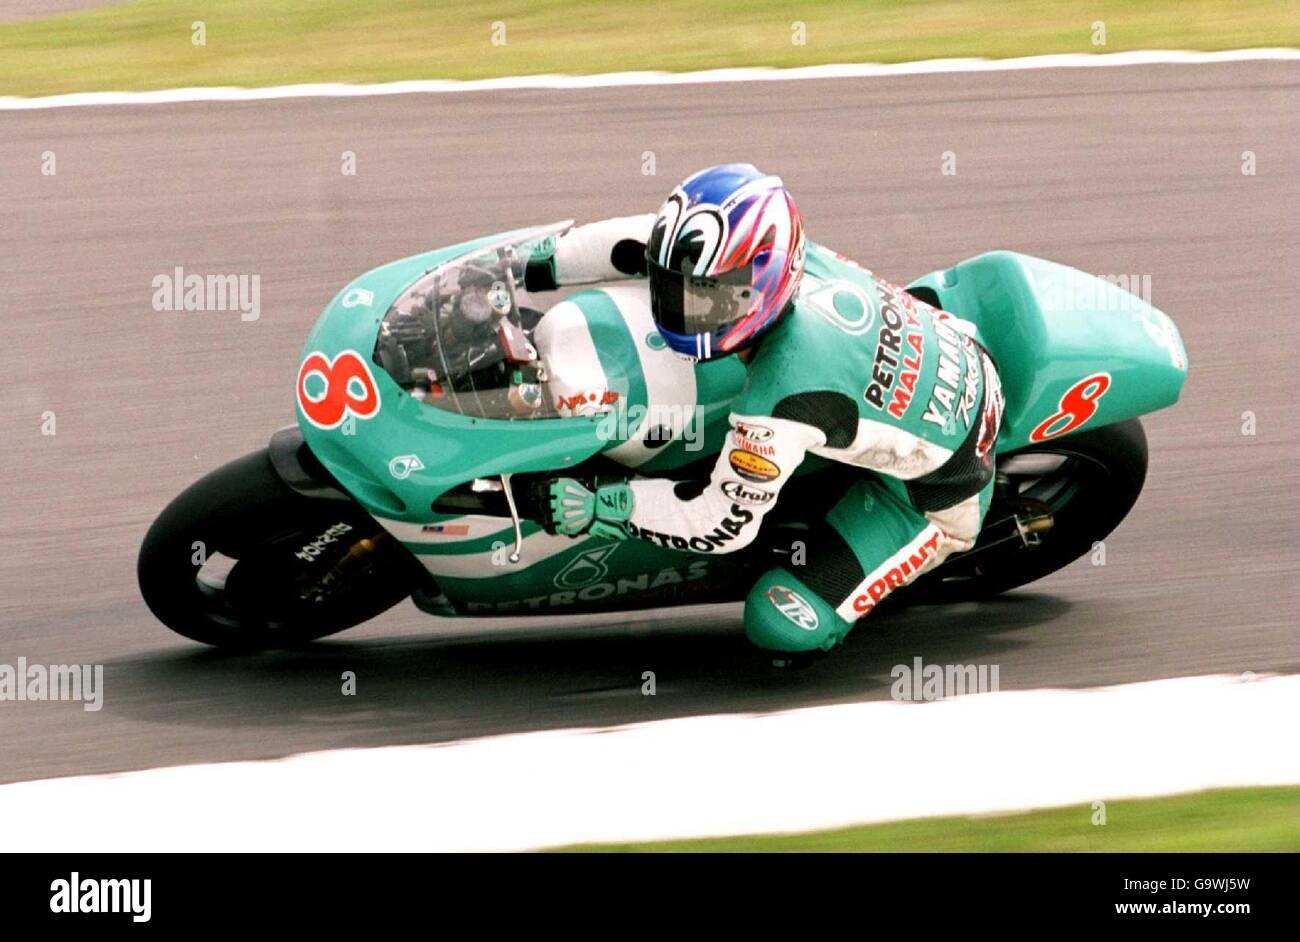 Motocyclisme - Championnat du monde de 250cc - Grand Prix de Grande-Bretagne - Donington Park. Naoki Matsudo, Petronas Sprinta Team TV Banque D'Images